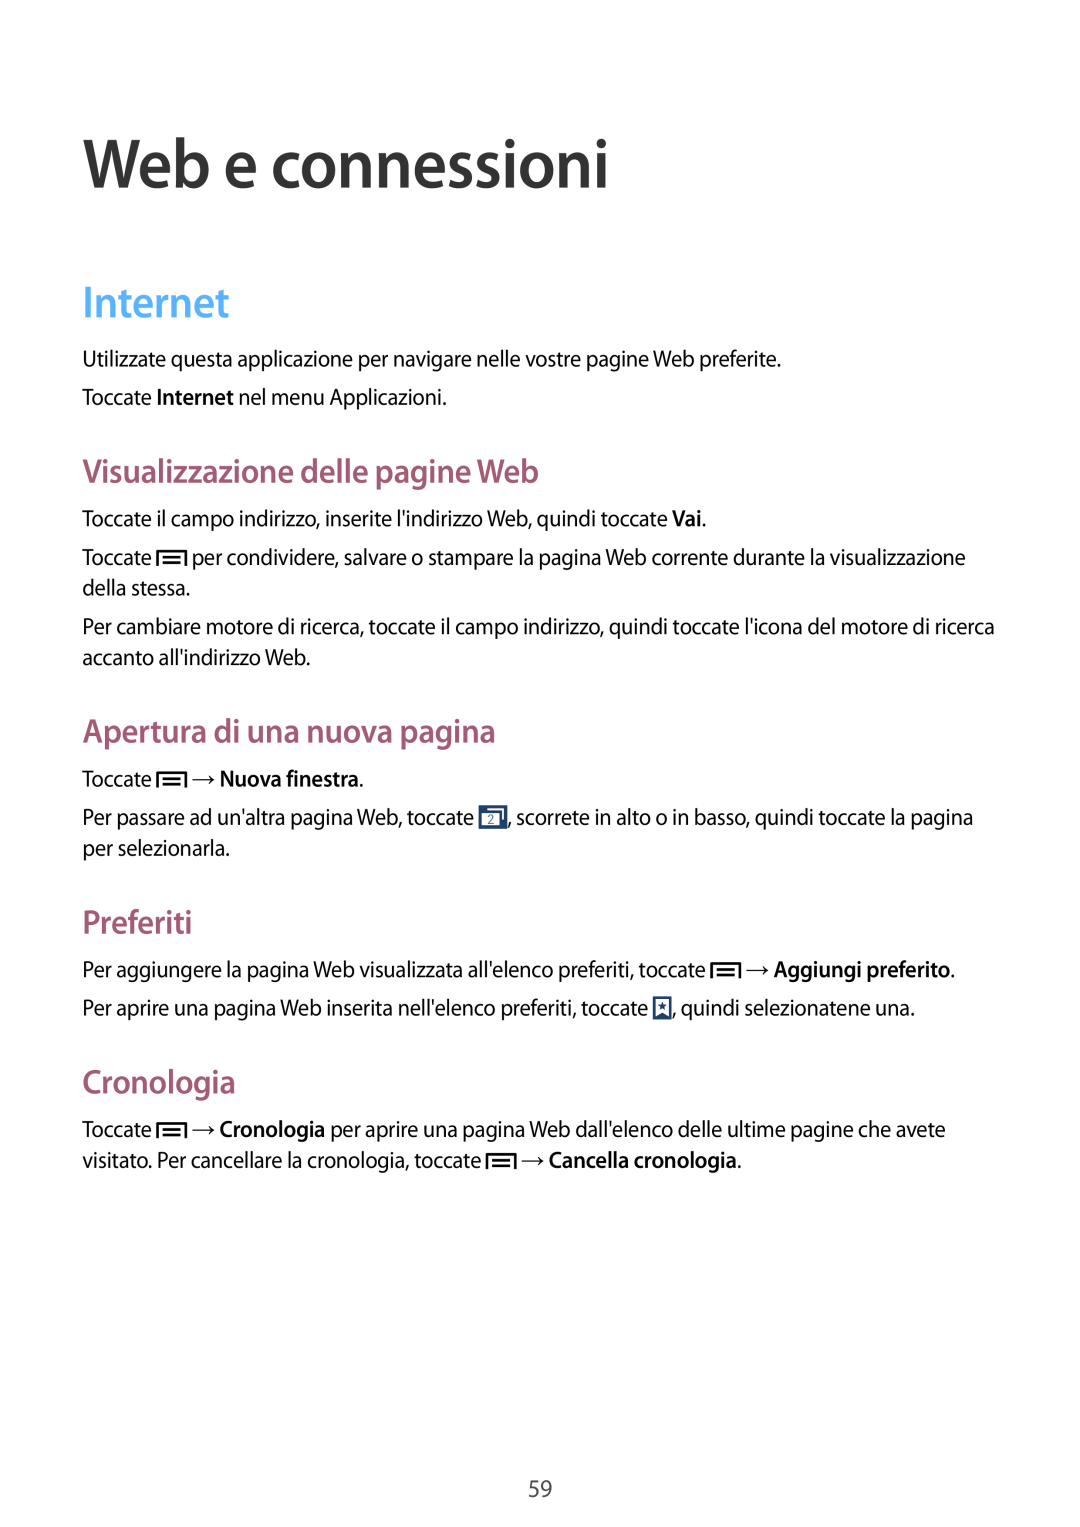 Samsung GT-I9195ZWAWIN manual Web e connessioni, Internet, Visualizzazione delle pagine Web, Apertura di una nuova pagina 